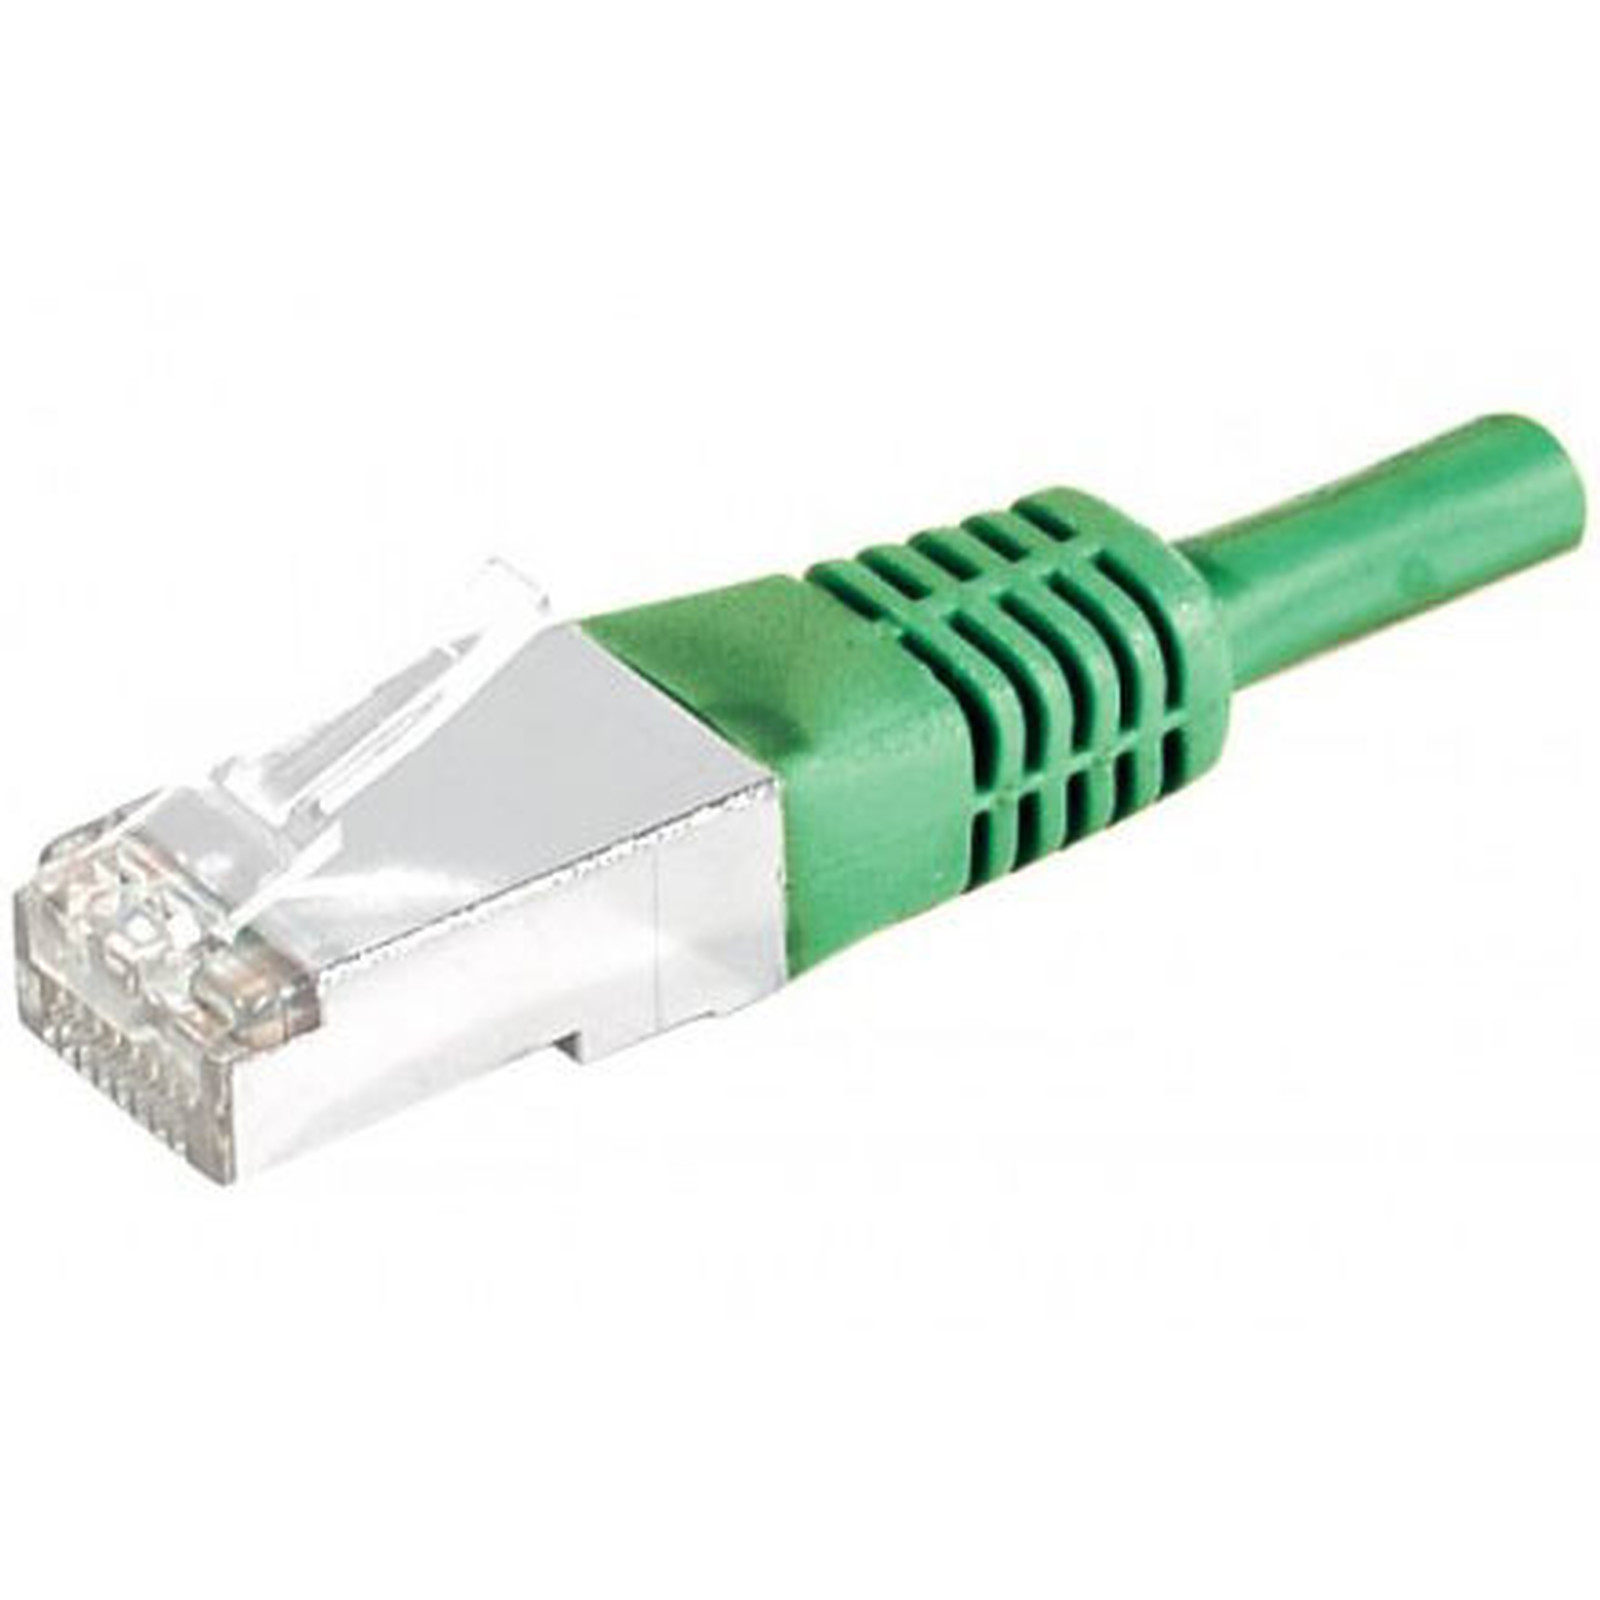 Cable RJ45 categorie 5e F/UTP 2 m (vert) - Cable RJ45 Generique